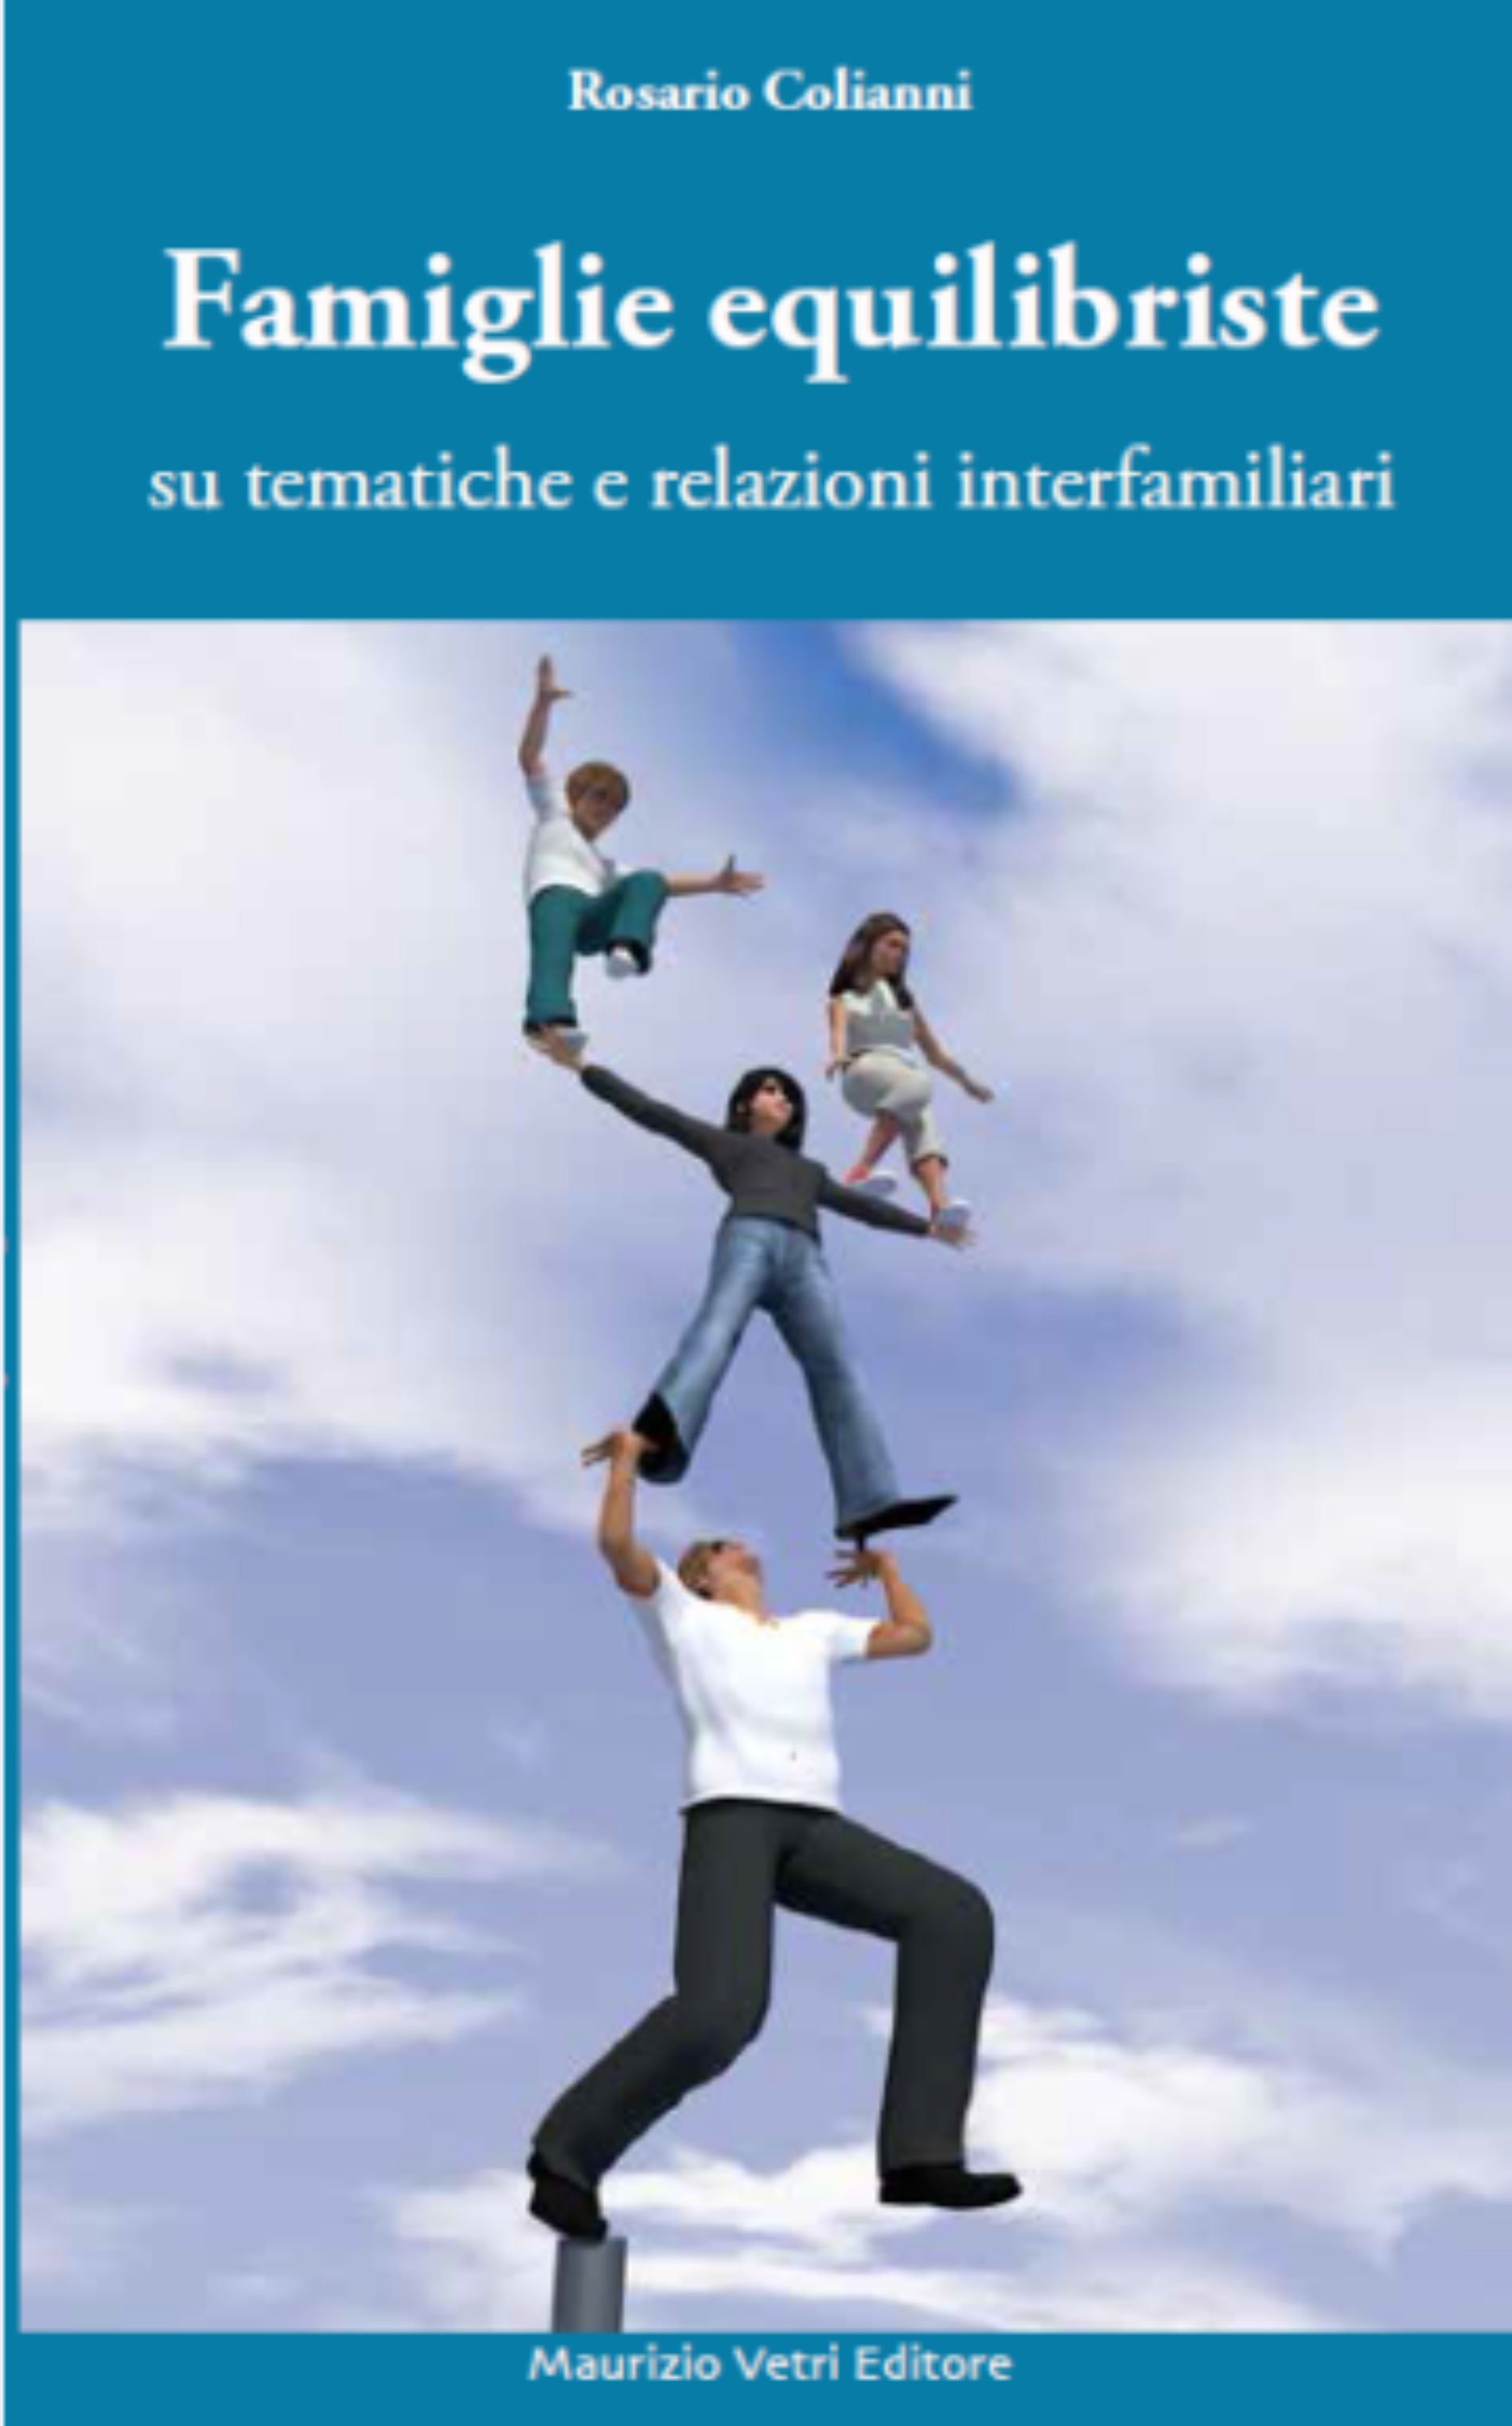 Famiglie equilibriste, il libro di Rosario Colianni, su tematiche e relazioni interfamiliari